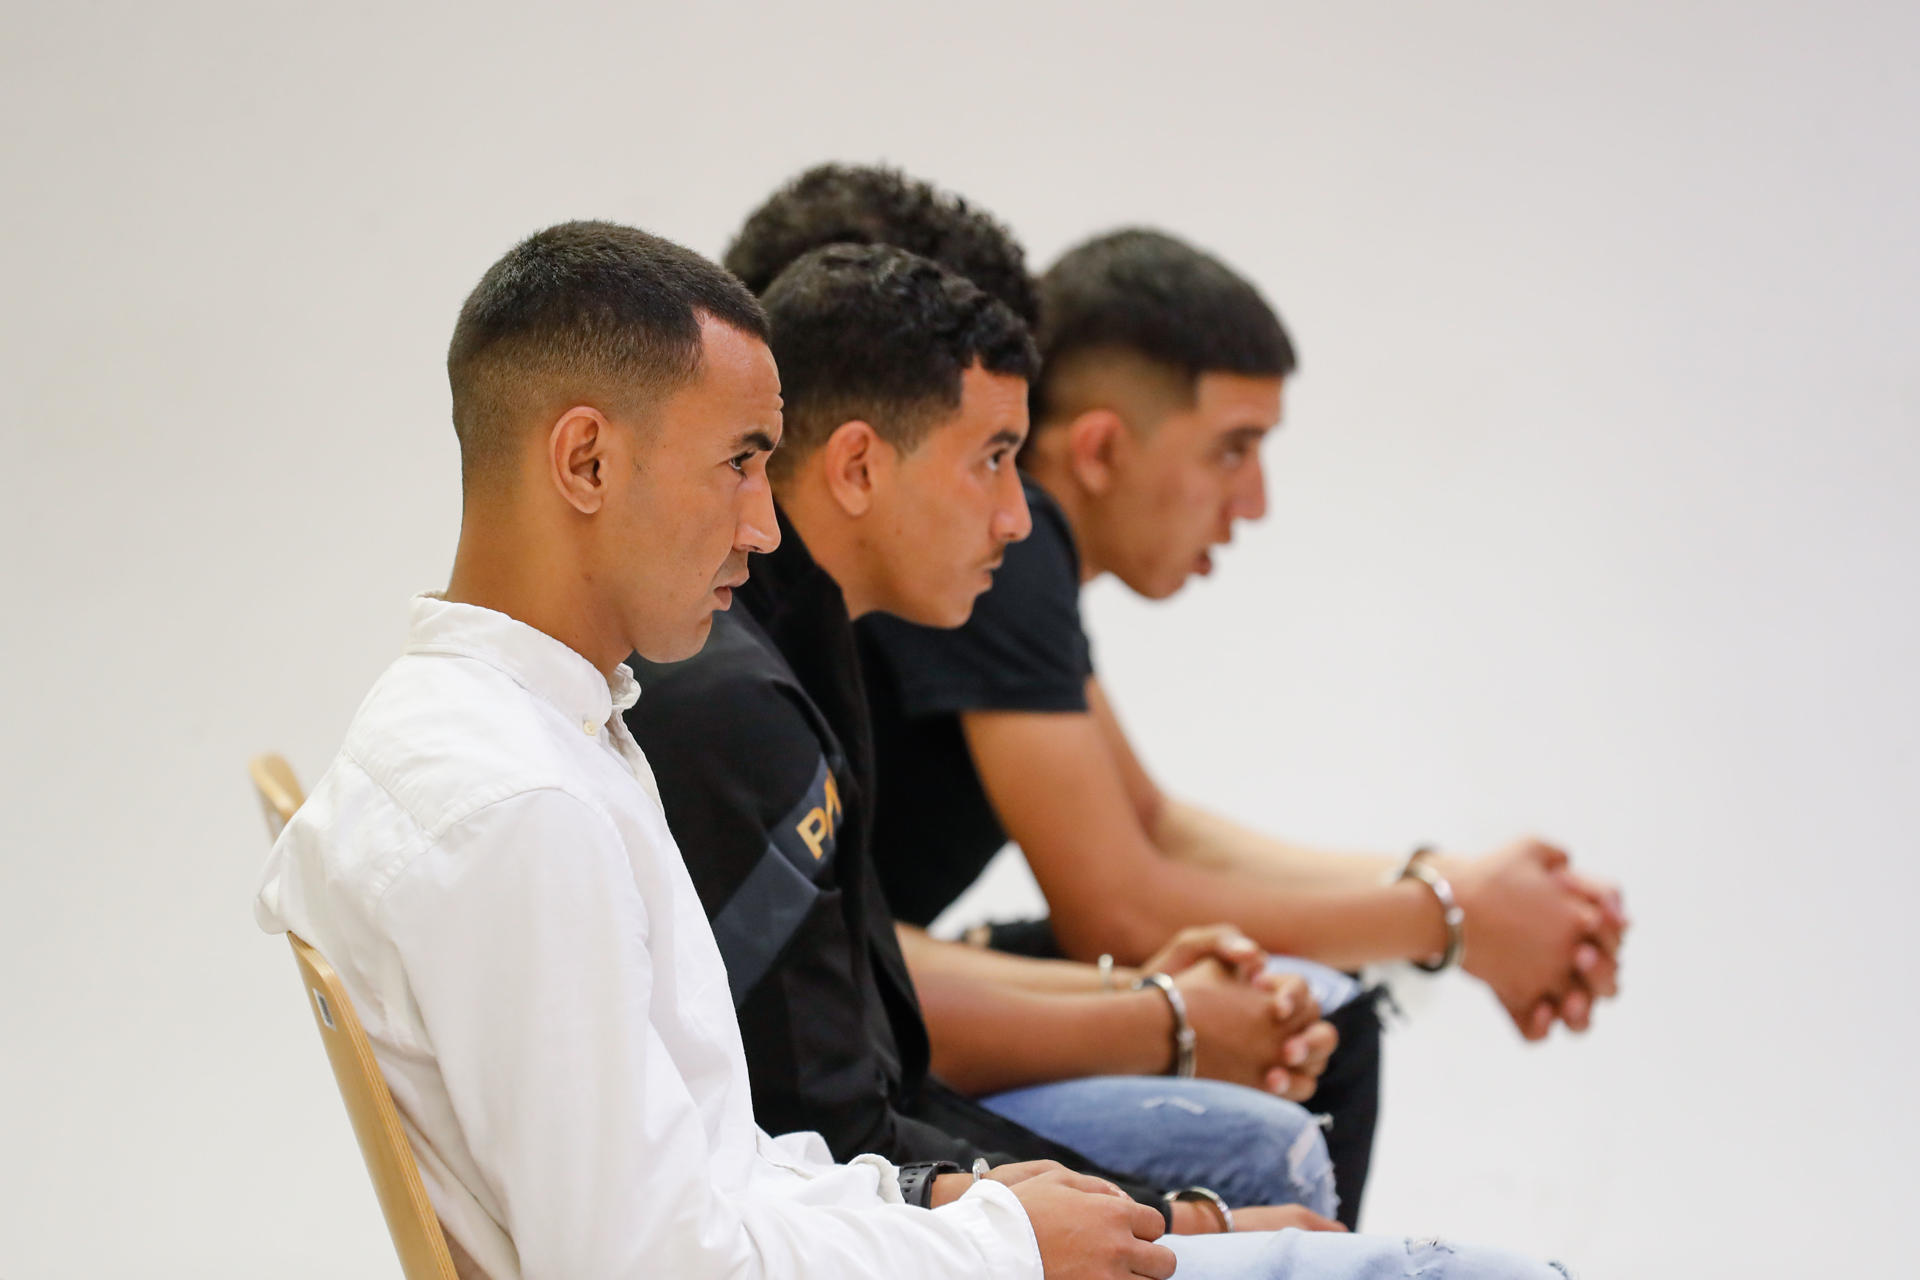 Foto de archivo tomada durante el juicio celebrado en la Audiencia de Las Palmas a los cuatro jóvenes que han sido condenados por violar en grupo a una turista en Puerto Rico (Gran Canaria) en febrero de 2021. EFE/ Elvira Urquijo A.